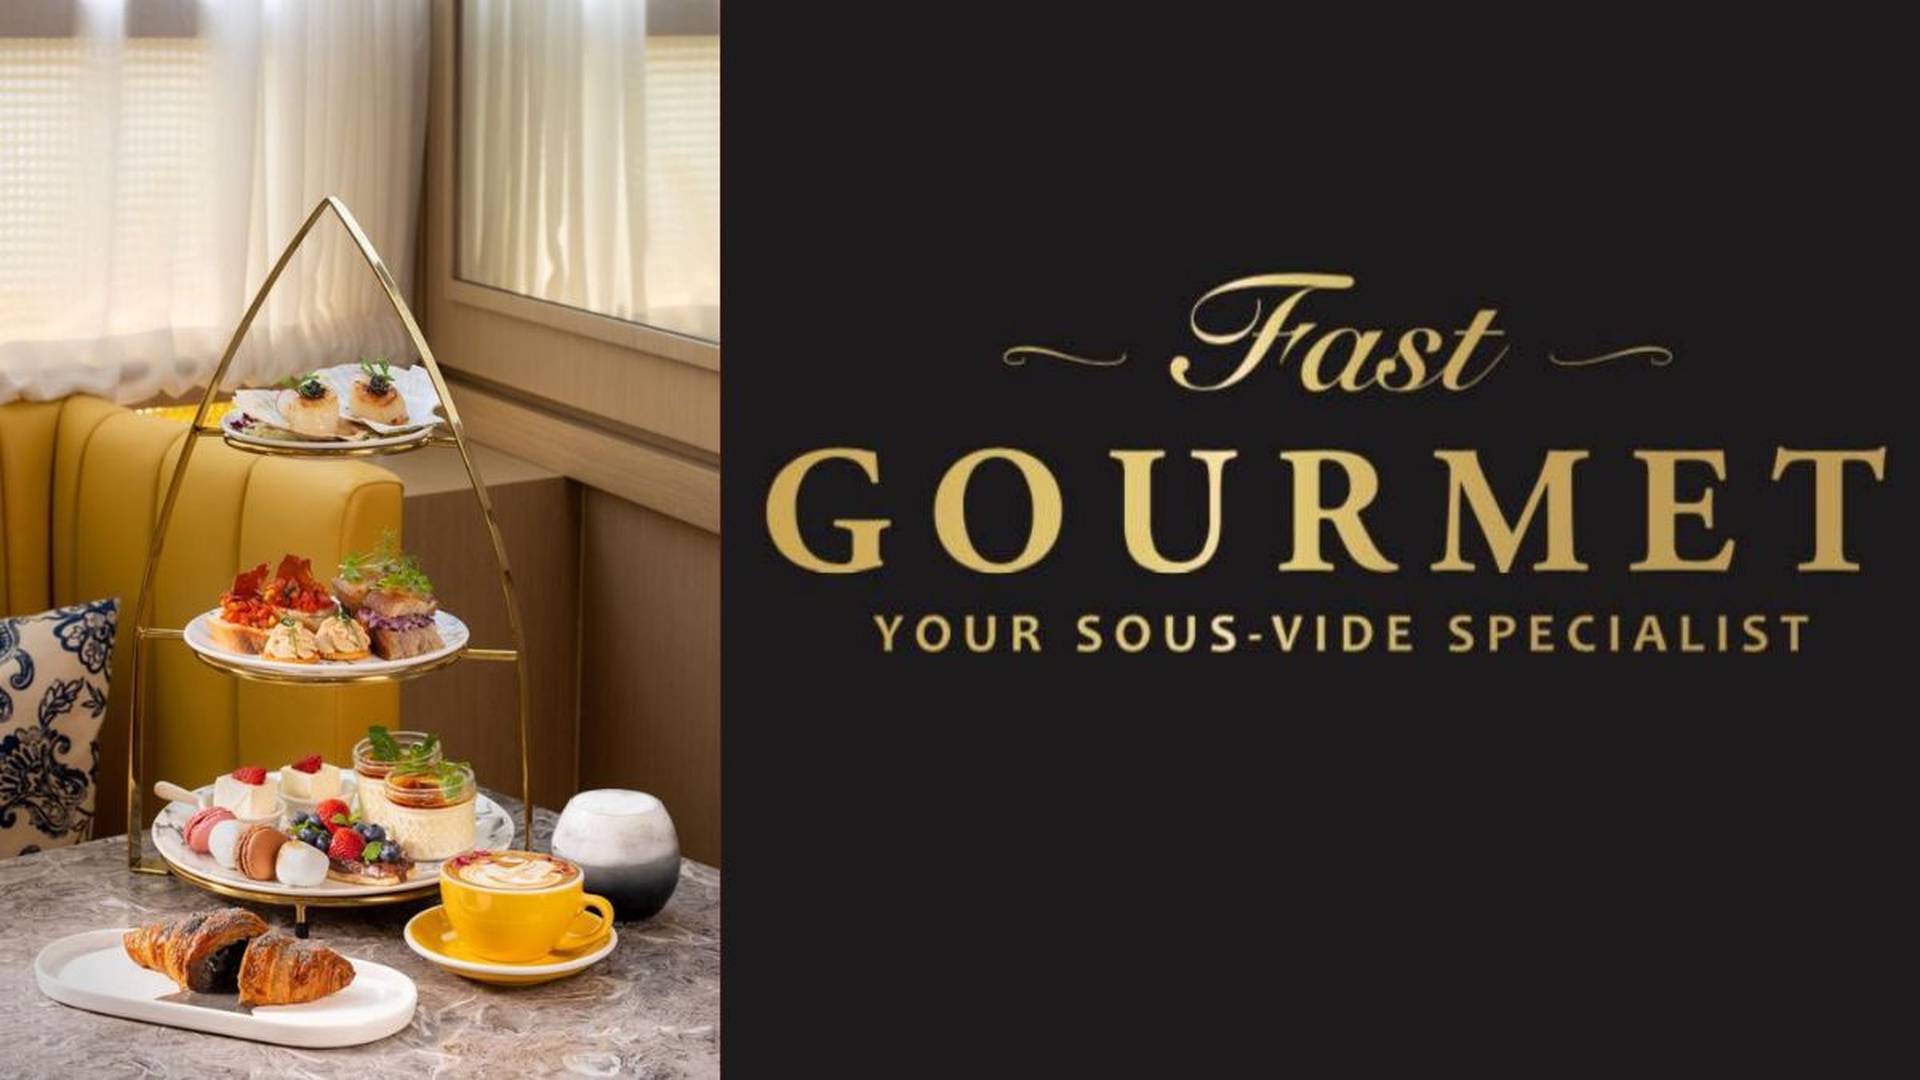 享慢煮意 Fast Gourmet | 法式下午茶套餐 | 38折 | 全包價 | 二位起